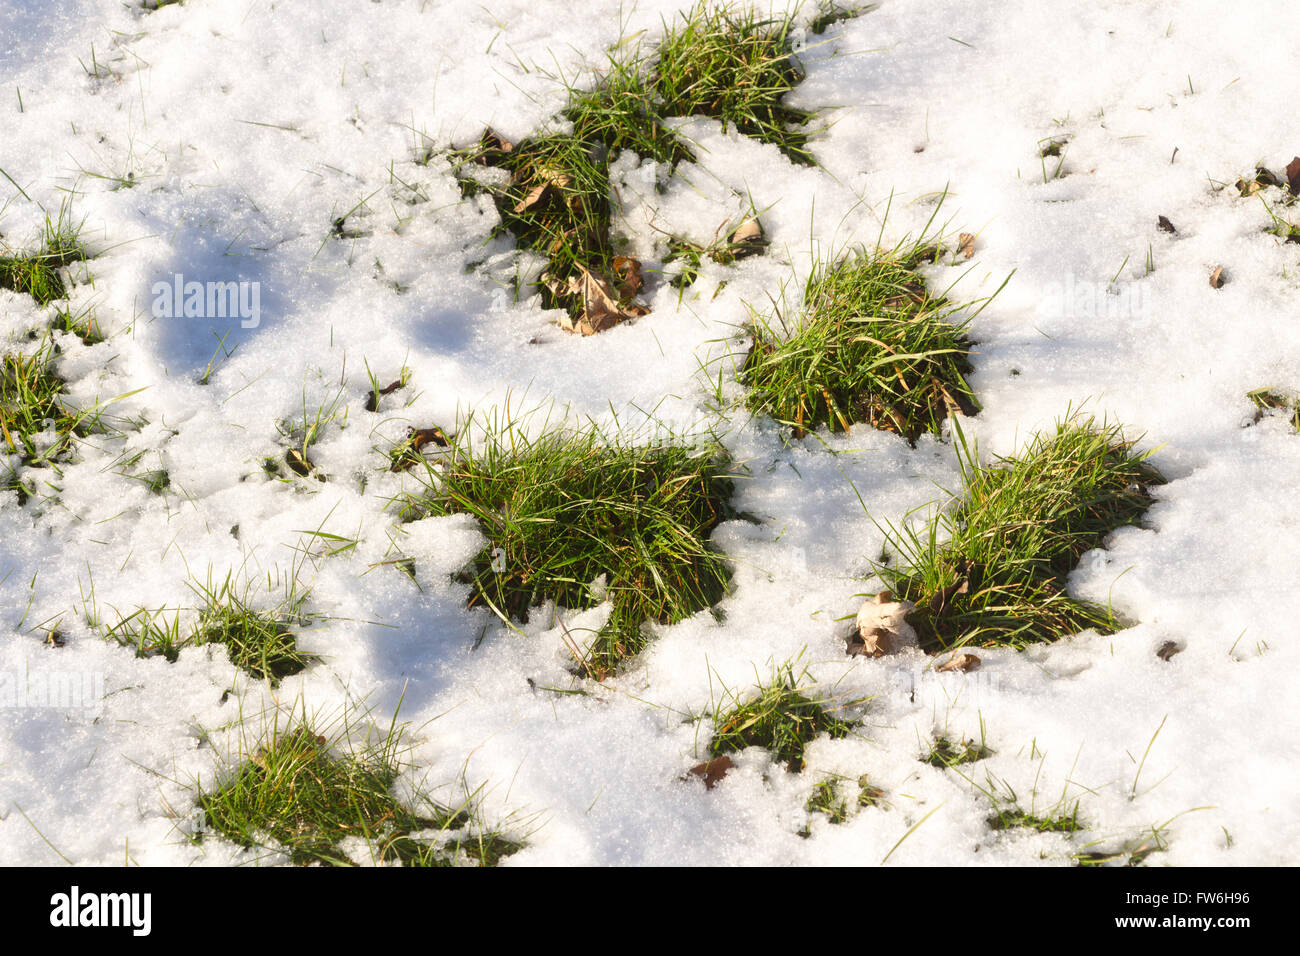 Fresco di erba verde sulla neve Foto Stock